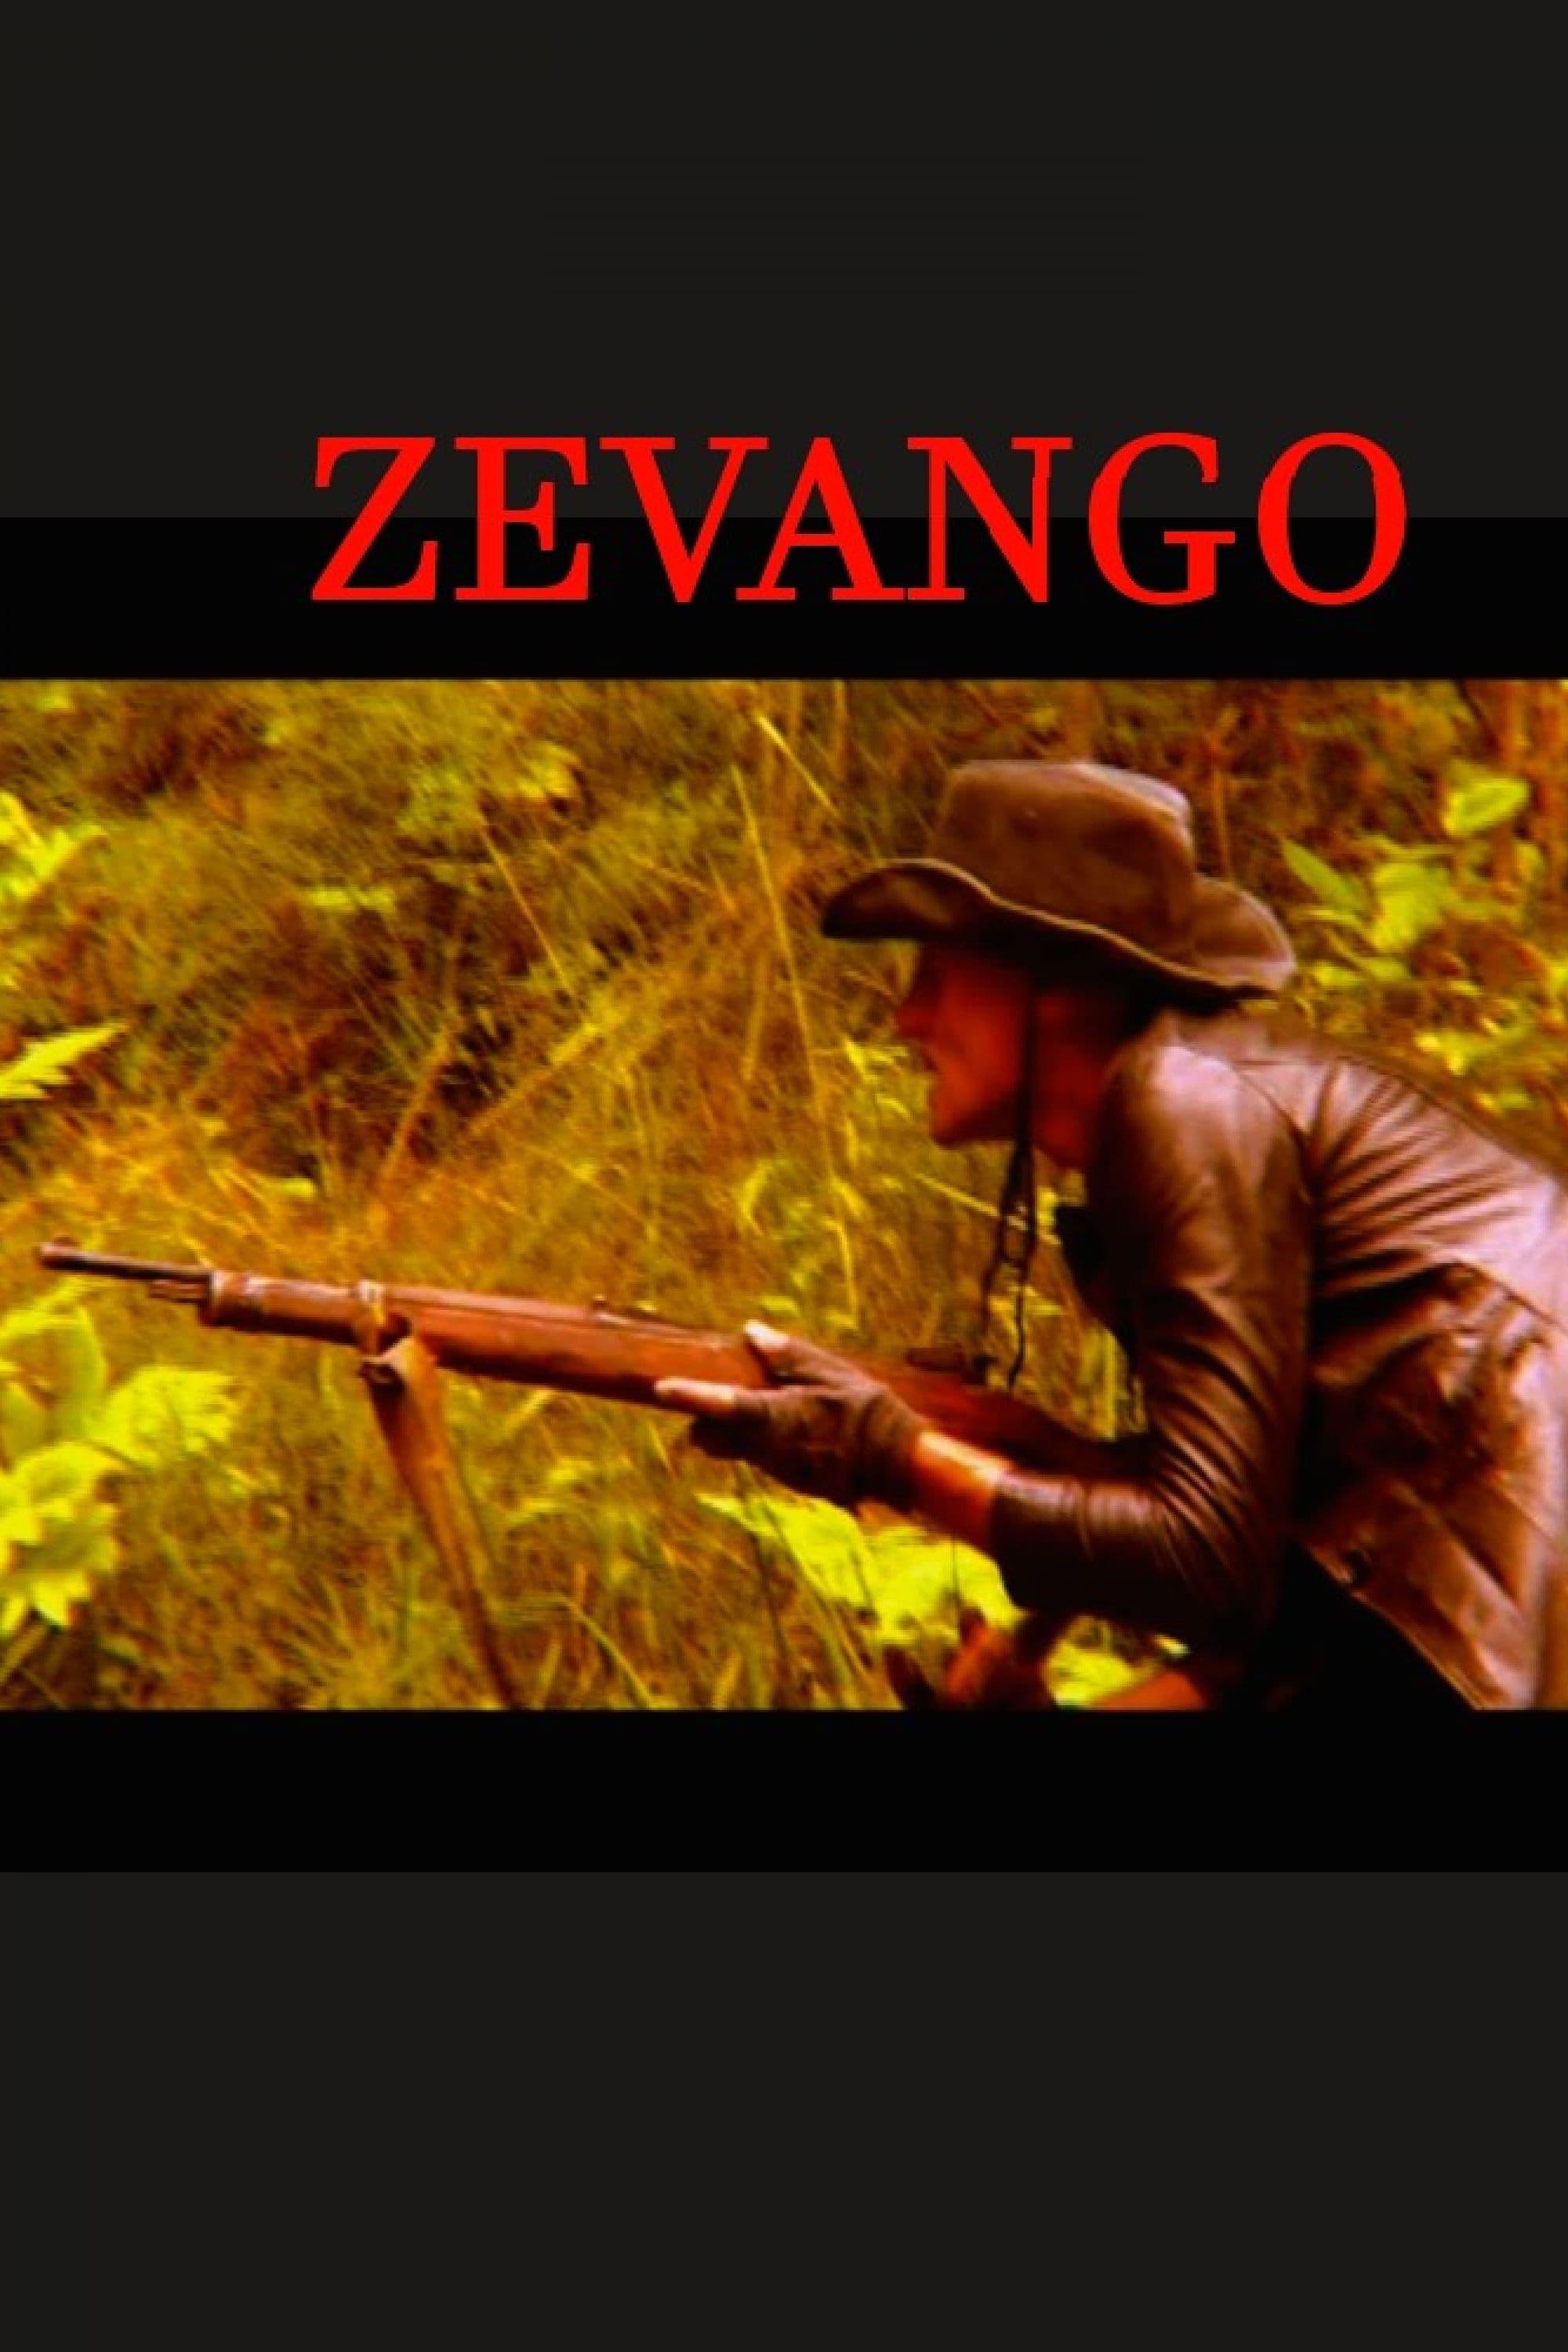 Zevango poster